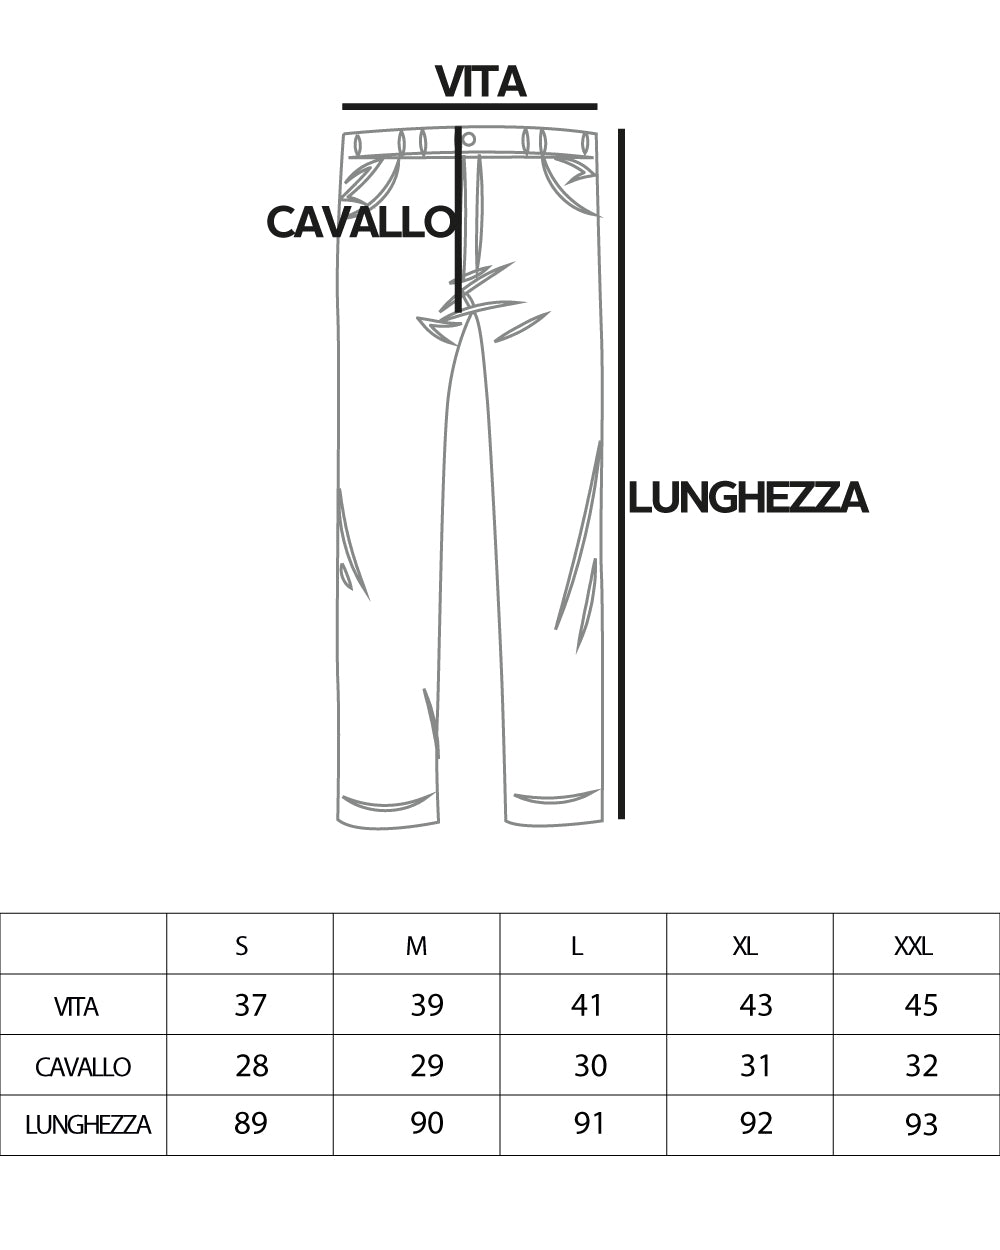 Pantaloni Uomo Abbottonatura Allungata Cotone Capri Tinta Unita Blu Casual GIOSAL-P5938A